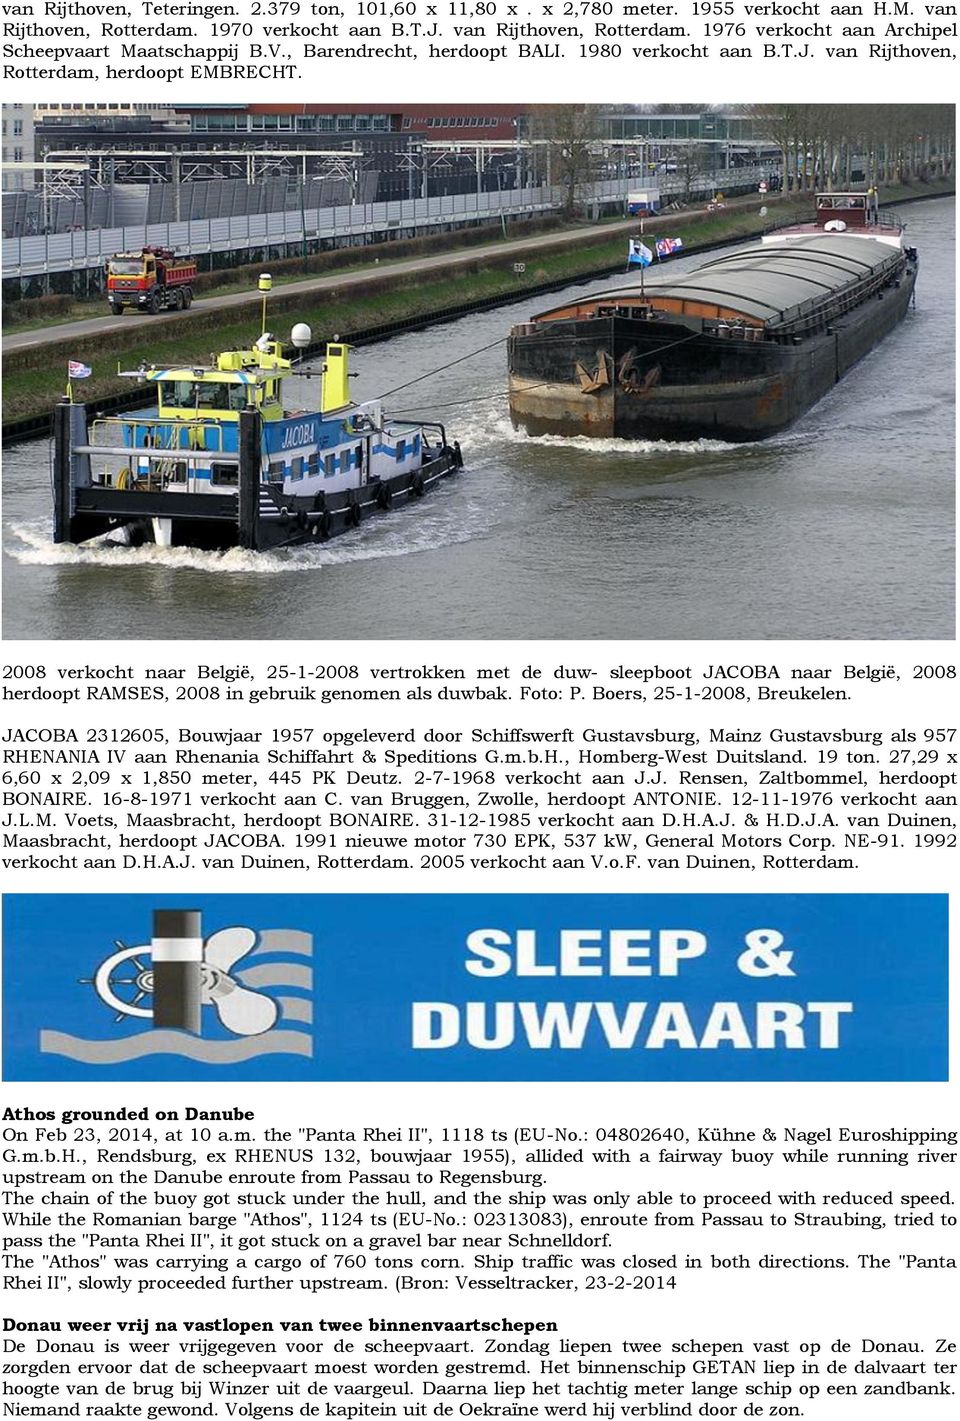 2008 verkocht naar België, 25-1-2008 vertrokken met de duw- sleepboot JACOBA naar België, 2008 herdoopt RAMSES, 2008 in gebruik genomen als duwbak. Foto: P. Boers, 25-1-2008, Breukelen.